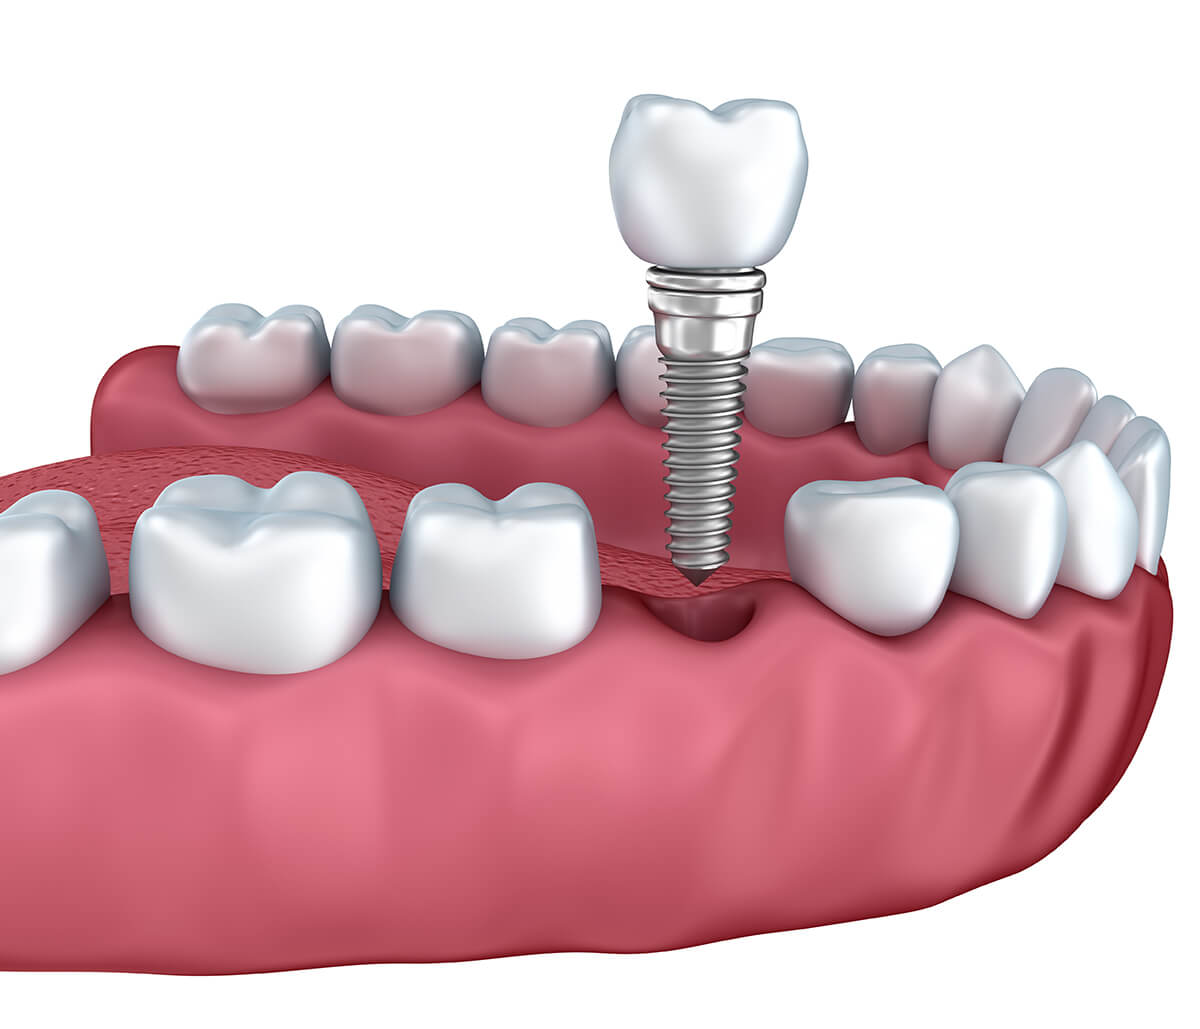 New Teeth Implants in Nashua NH Area